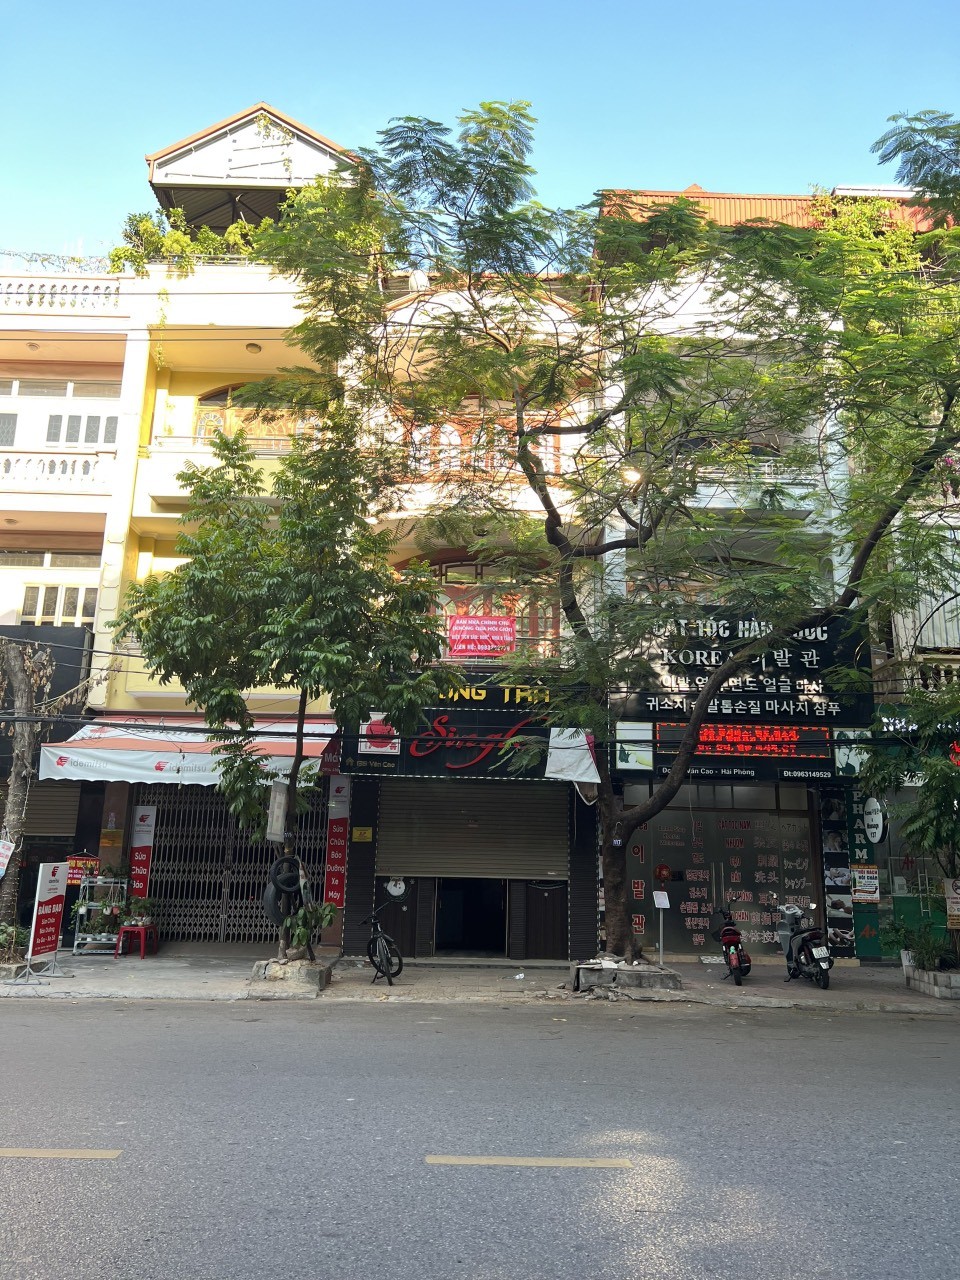 Chính chủ bán nhà mặt đường số 135 Văn Cao, Ngô Quyền, Hải Phòng. 2